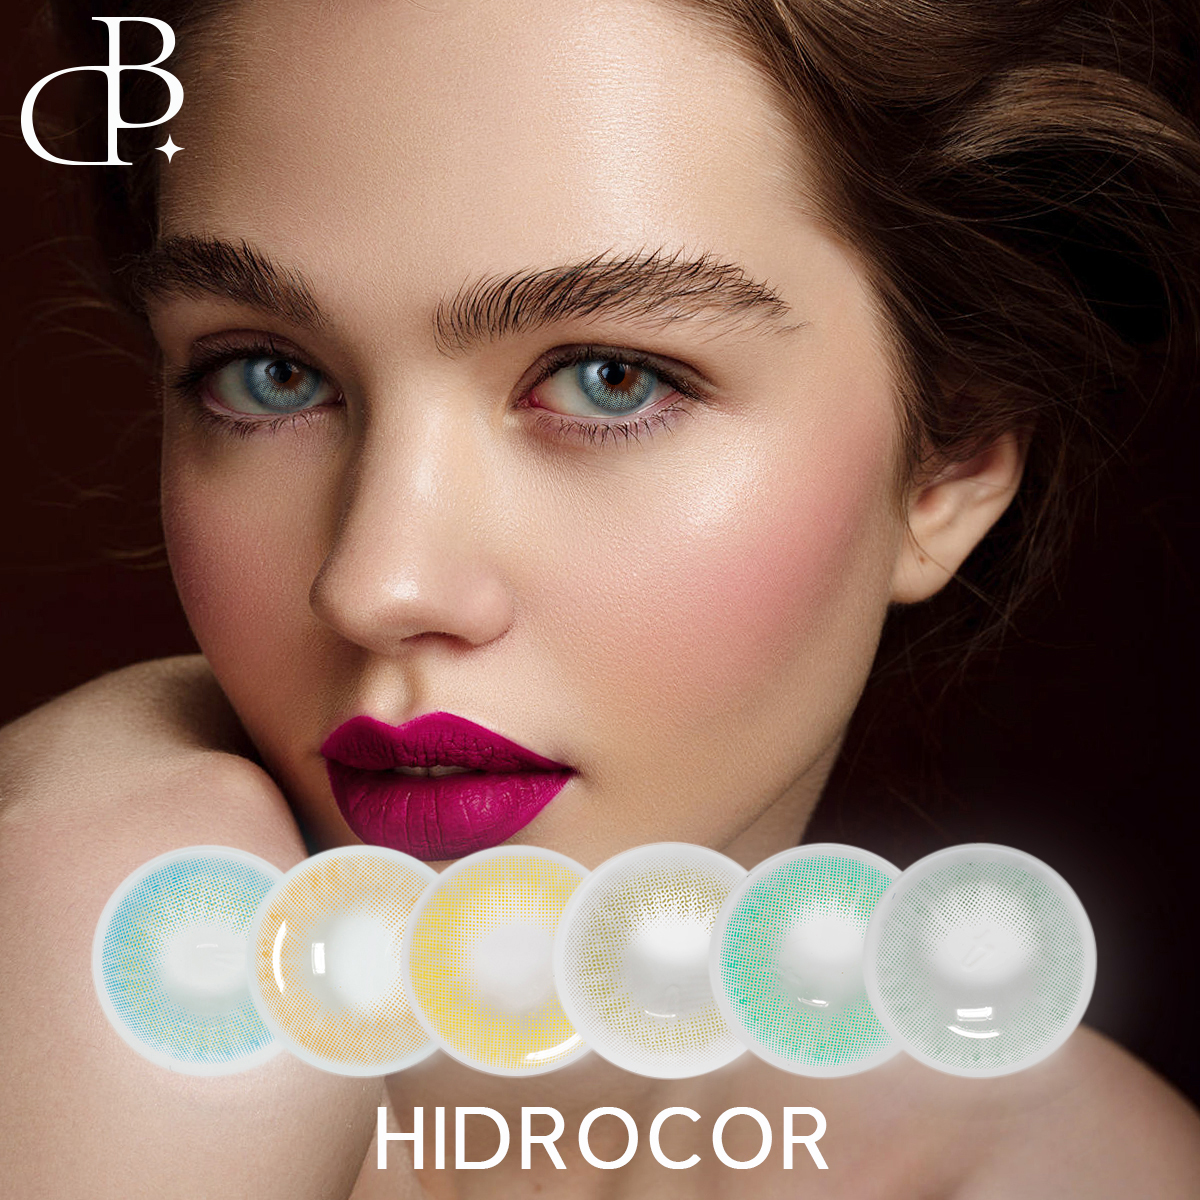 Veleprodaja barvnih kontaktnih leč za oči Hidrocor Color Contacts Circle po meri. Letne naravne barvne kontaktne leče